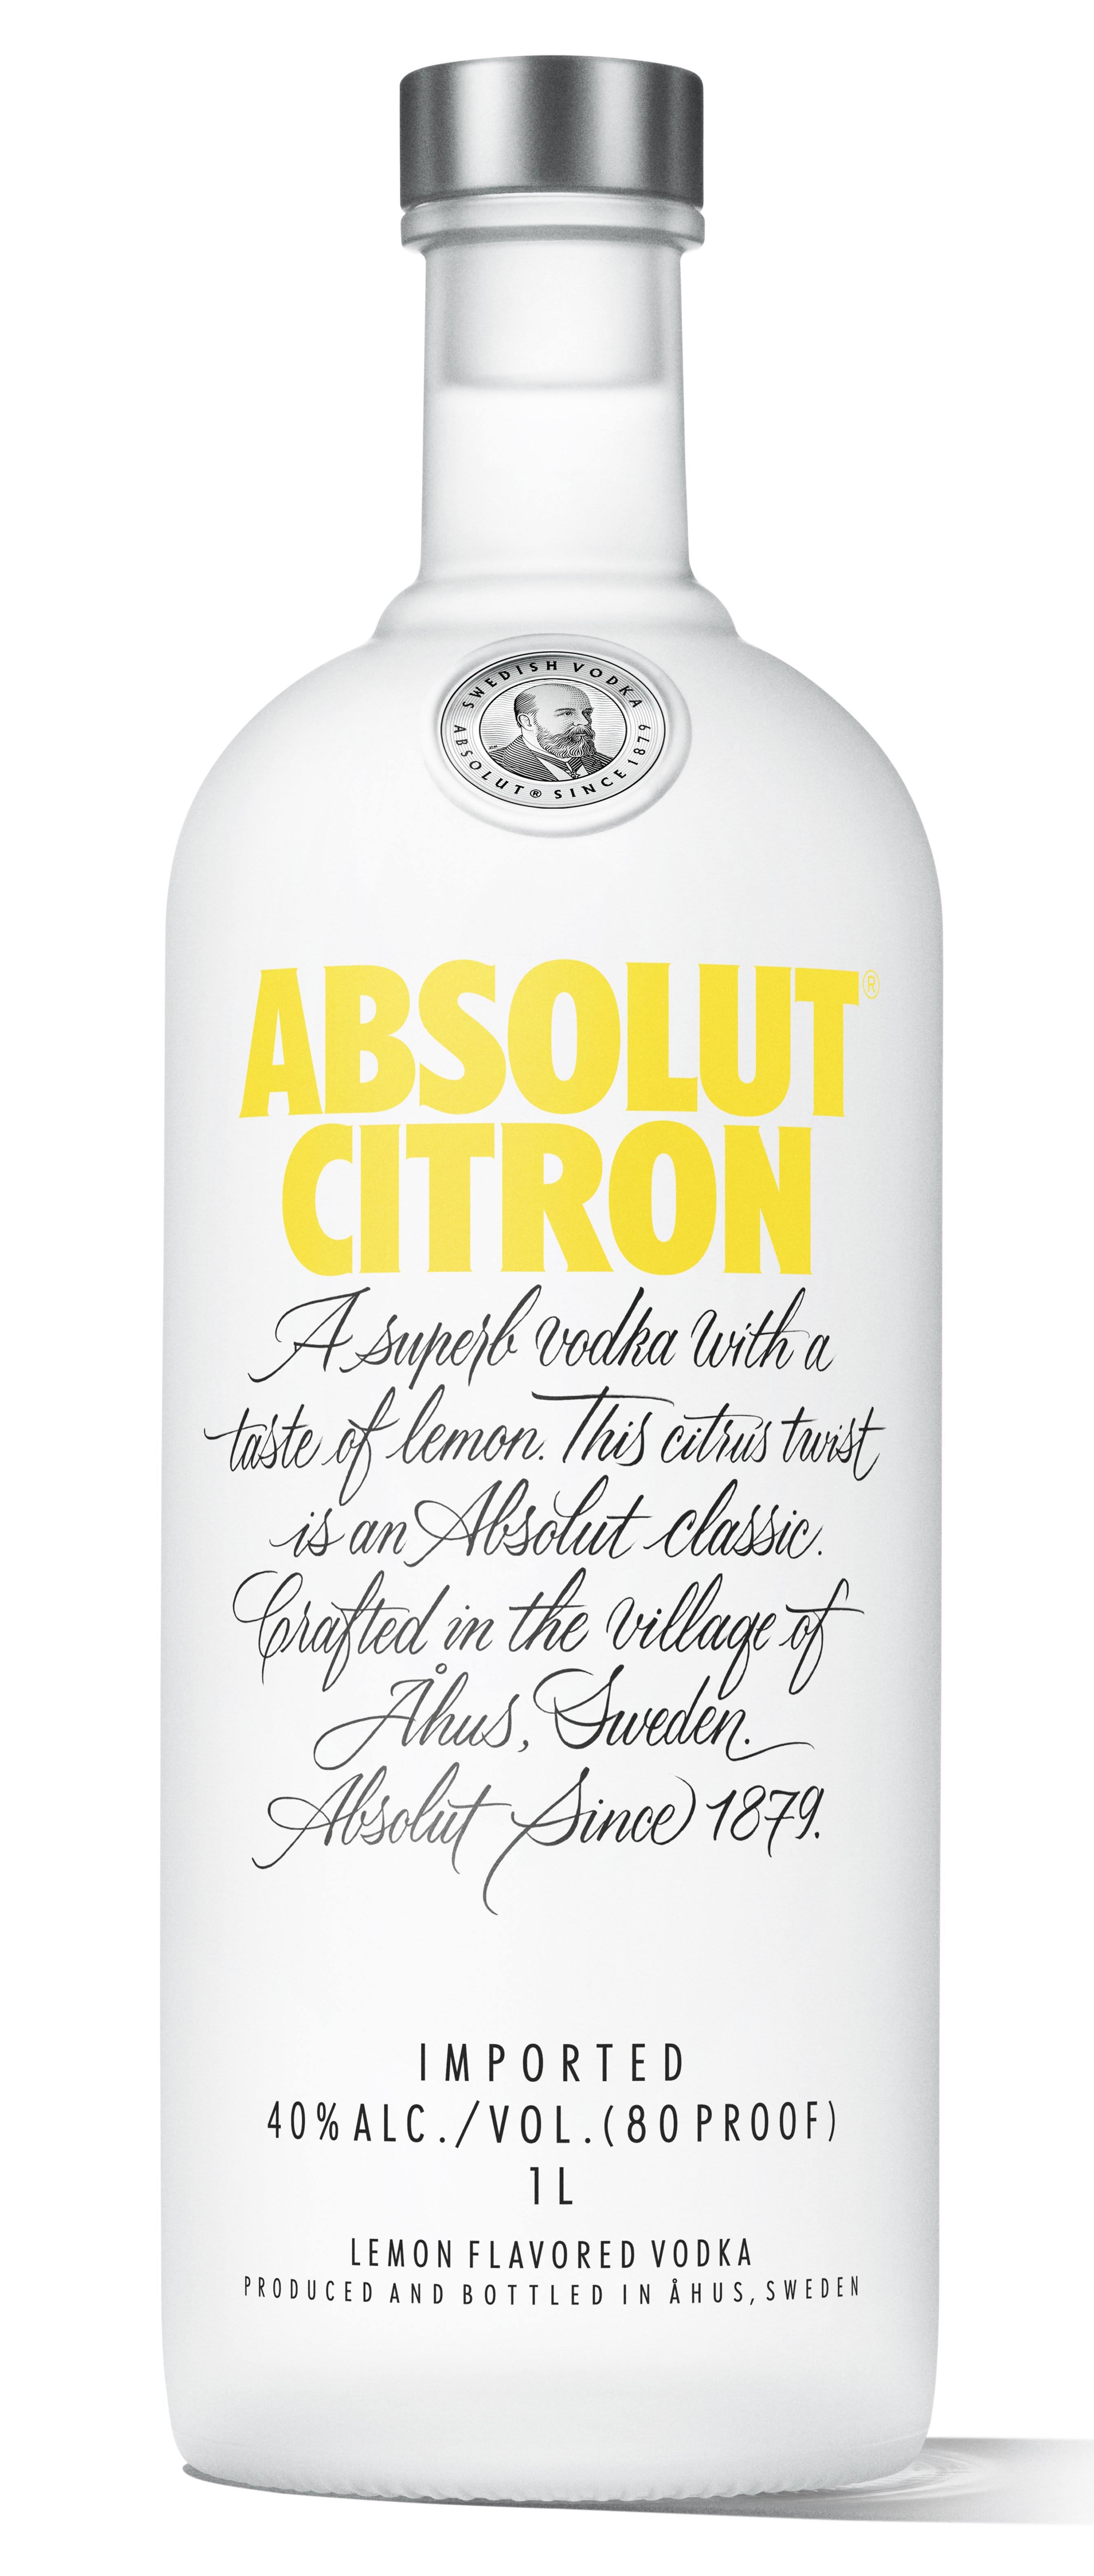 Absolute Citron Vodka